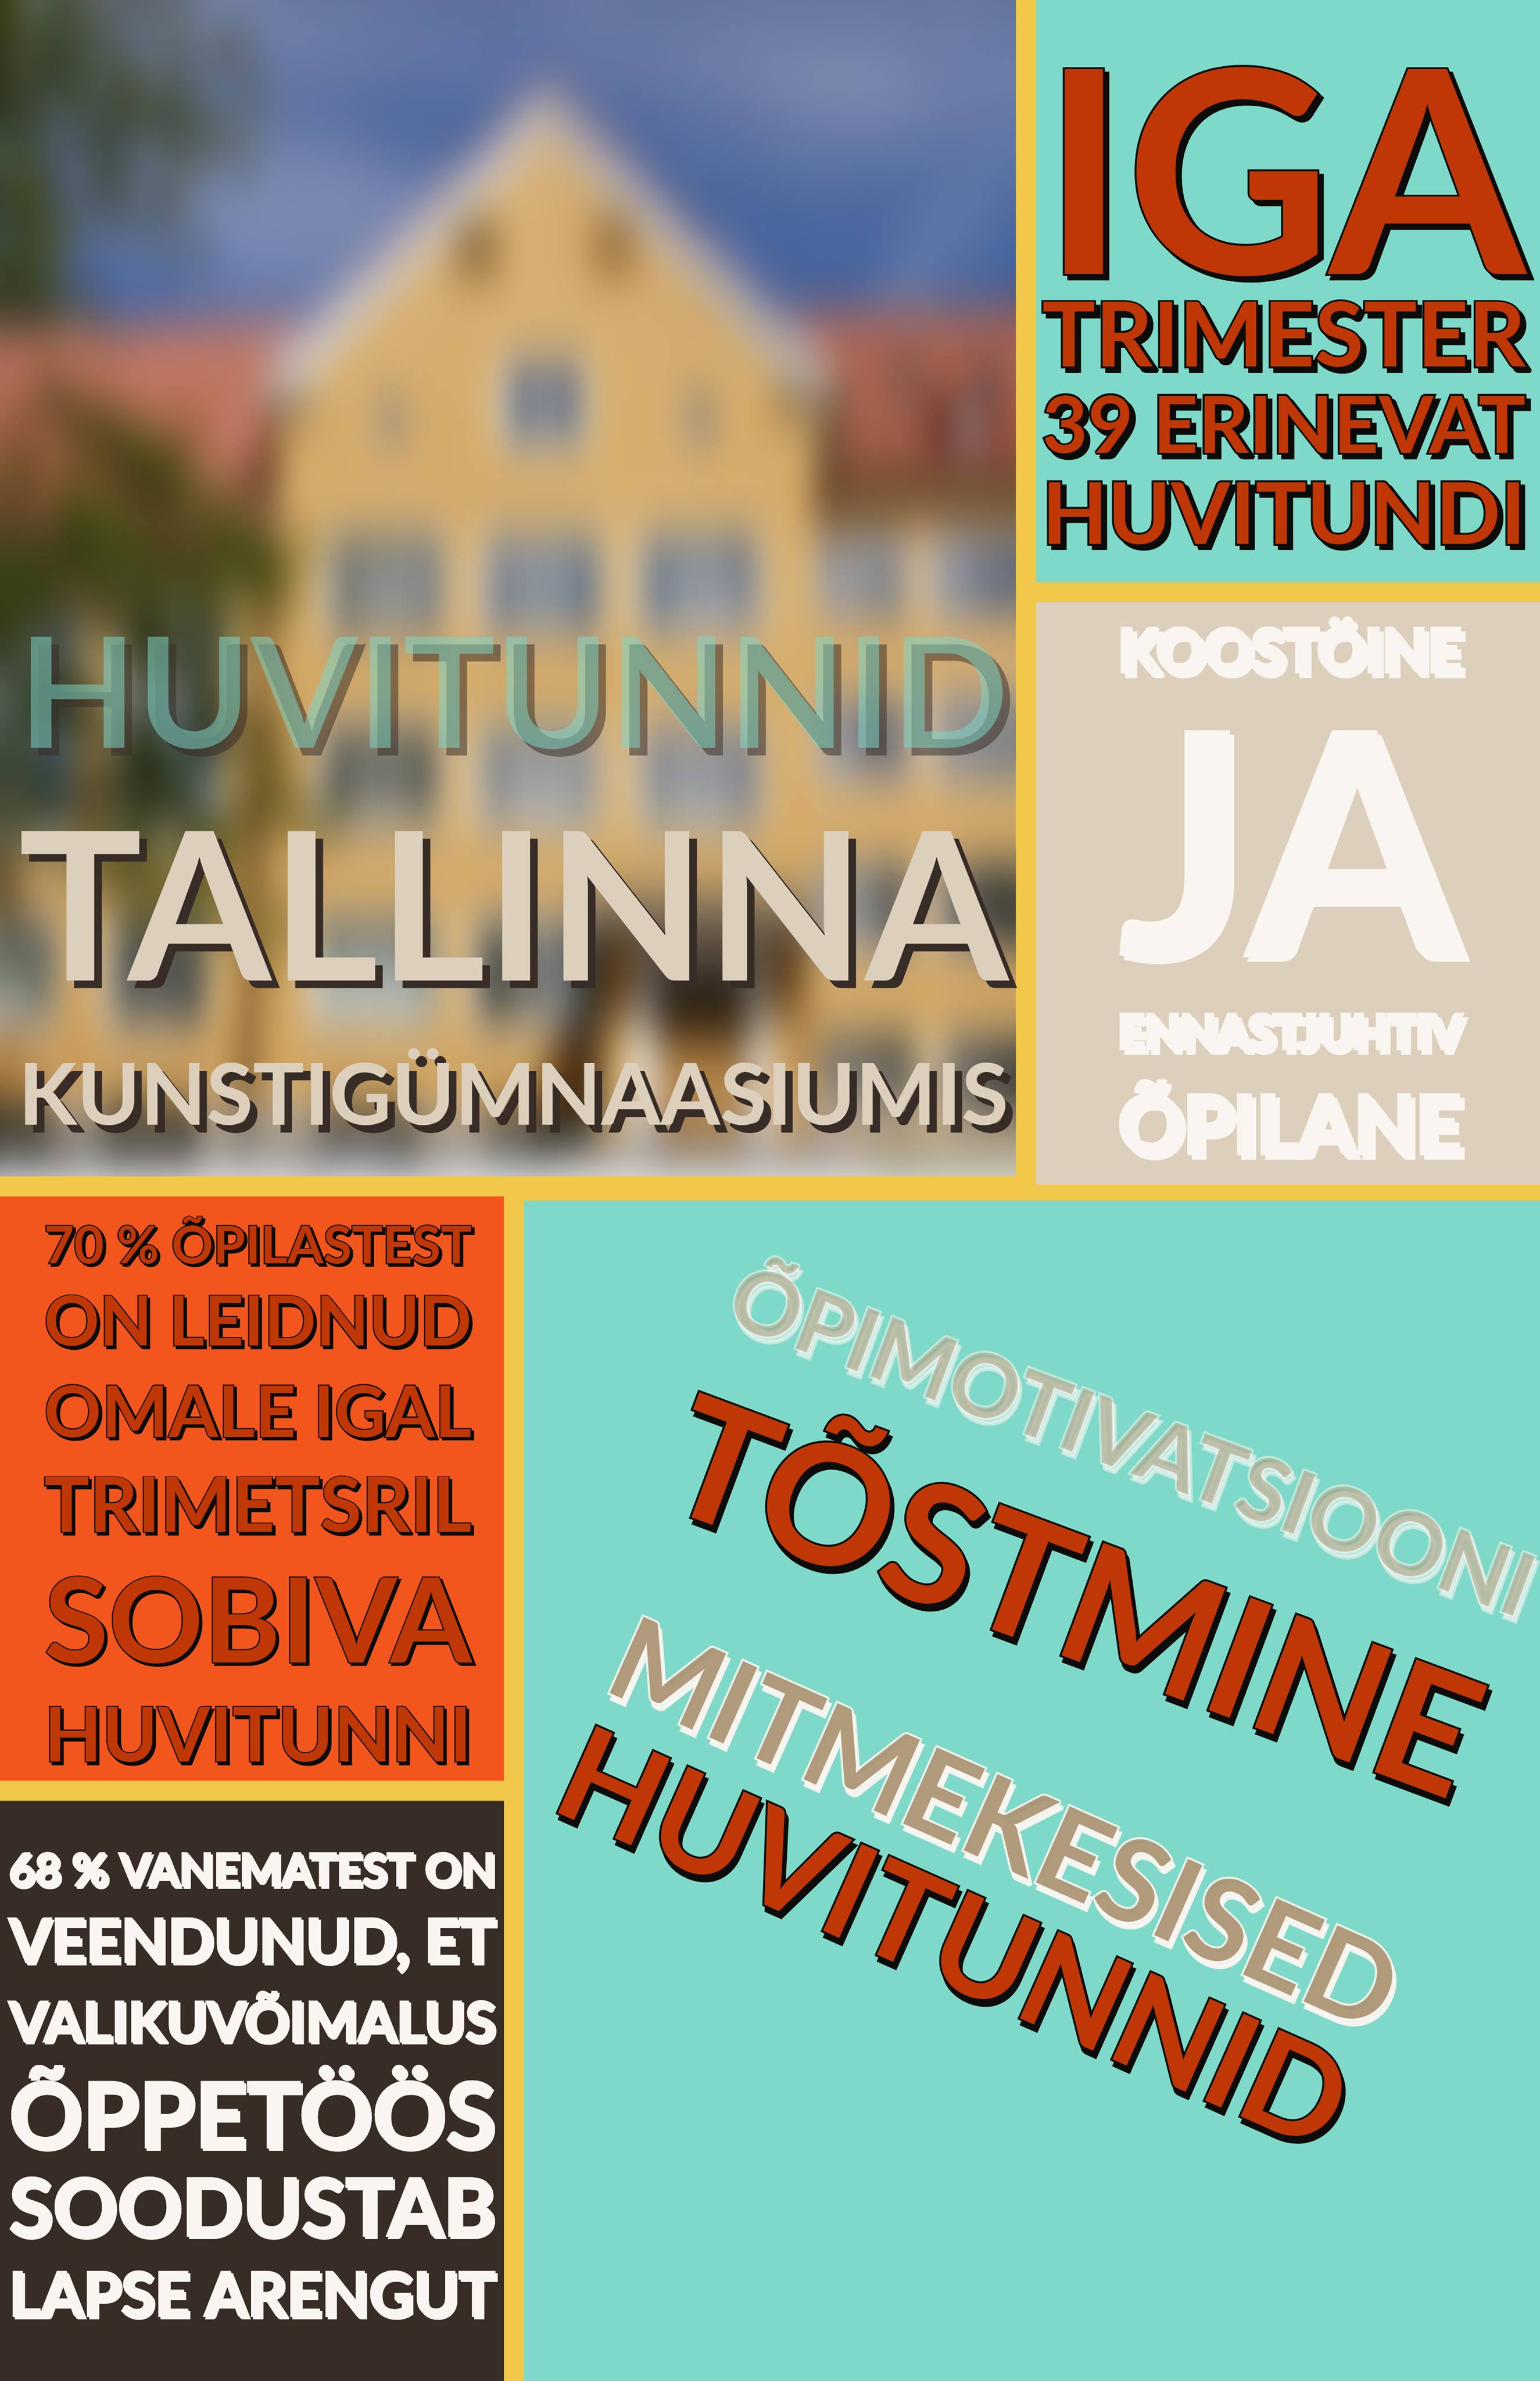 Tallinna Kunstigümnaasiumi poster